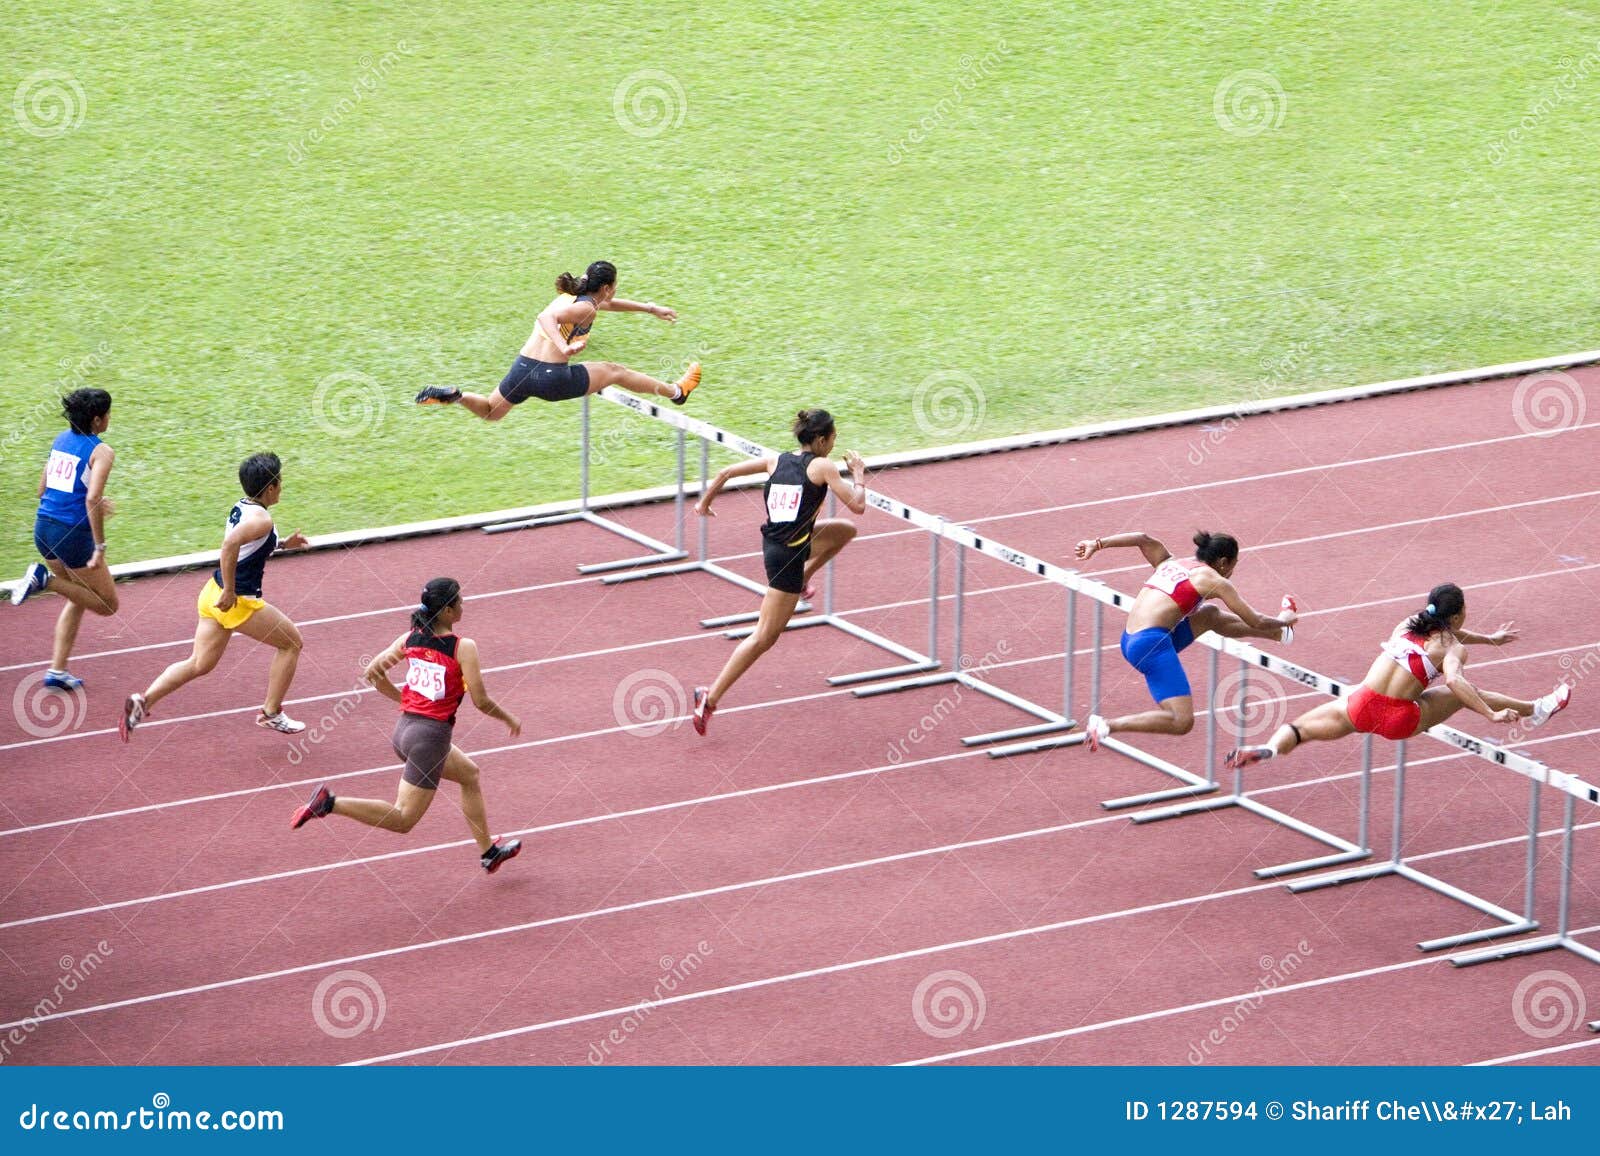 women's 100m hurdles